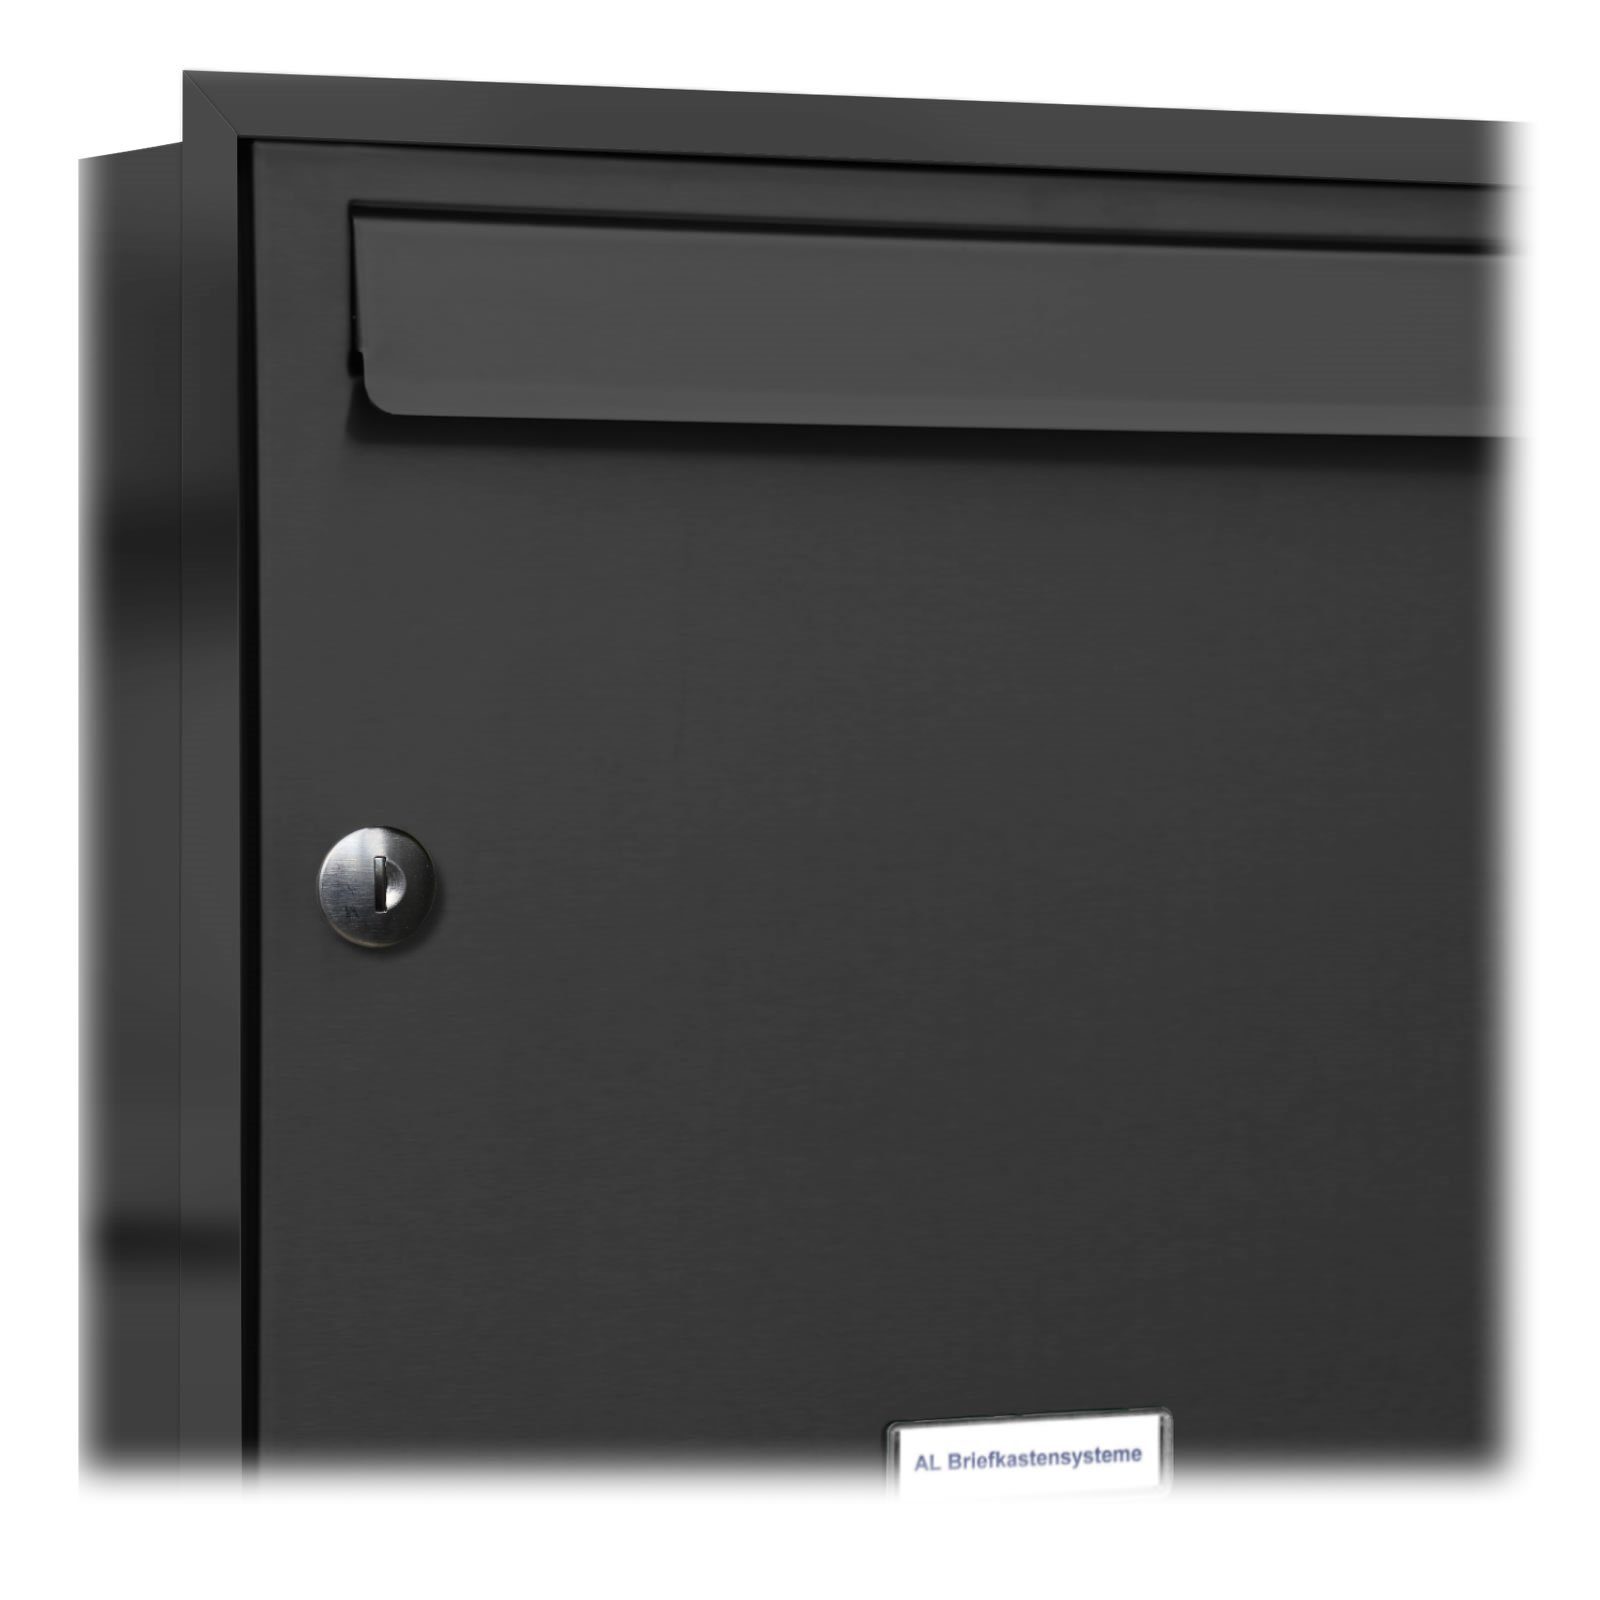 7er Unterputz Wandbriefkasten Anthrazit Premium Klingel mit Briefkasten Fach 7 A4 Briefkastensysteme AL